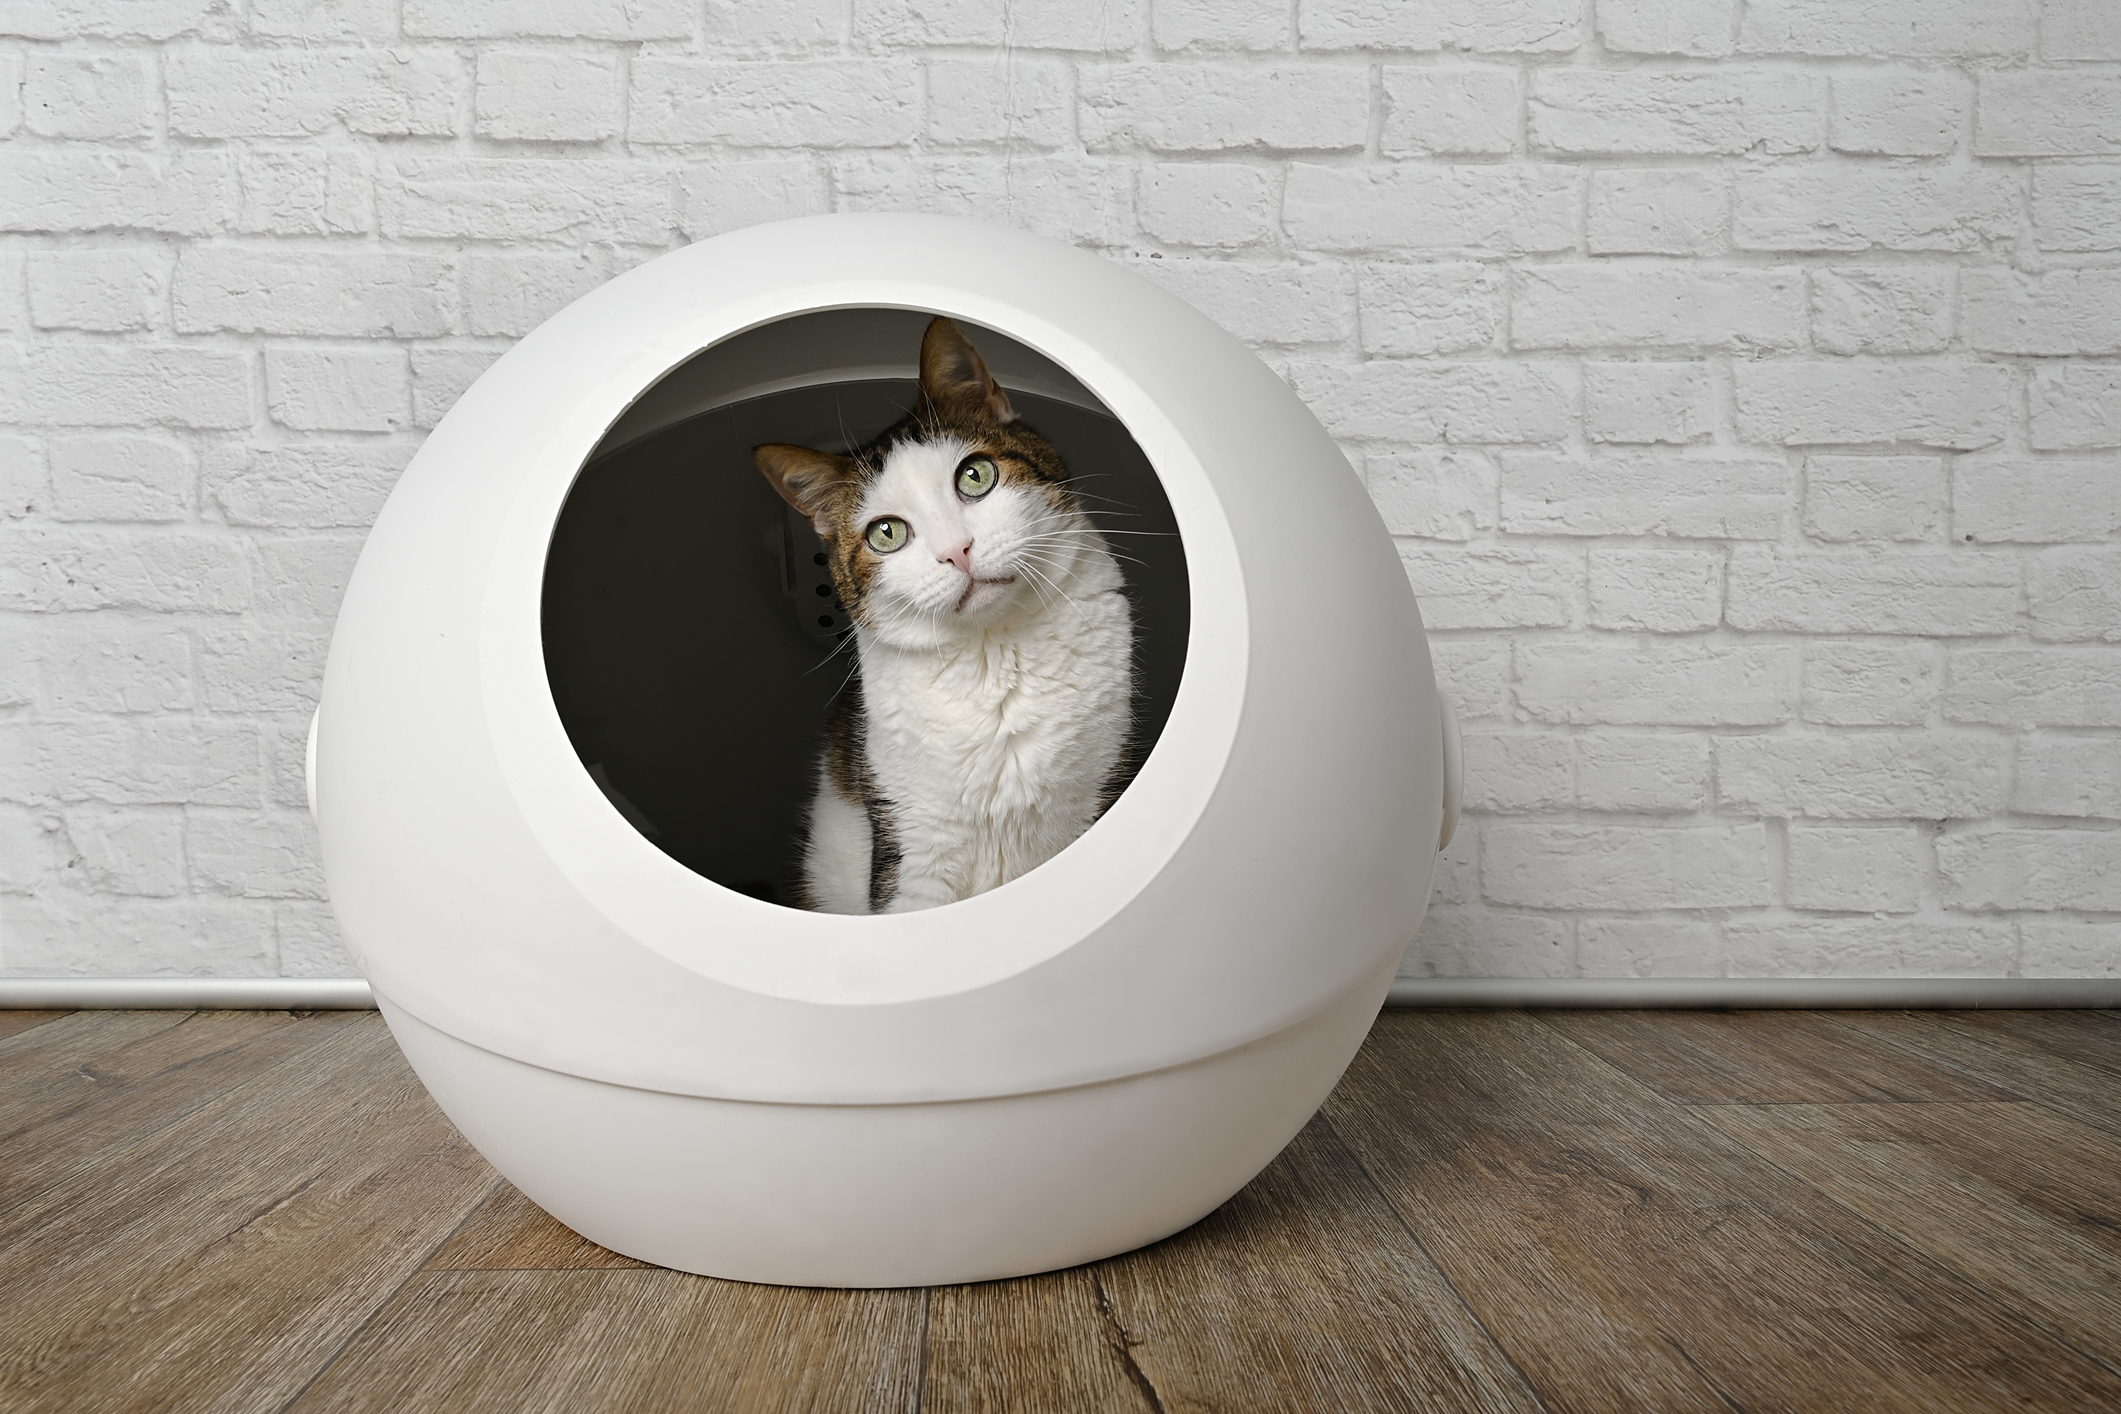 Qliq 全自動 猫トイレ スマホで操作 自動 お掃除 猫用 ロボットトイレ 臭いがもれない 多頭飼い対応 スマートネコトイレ コンパクトエコ設計 